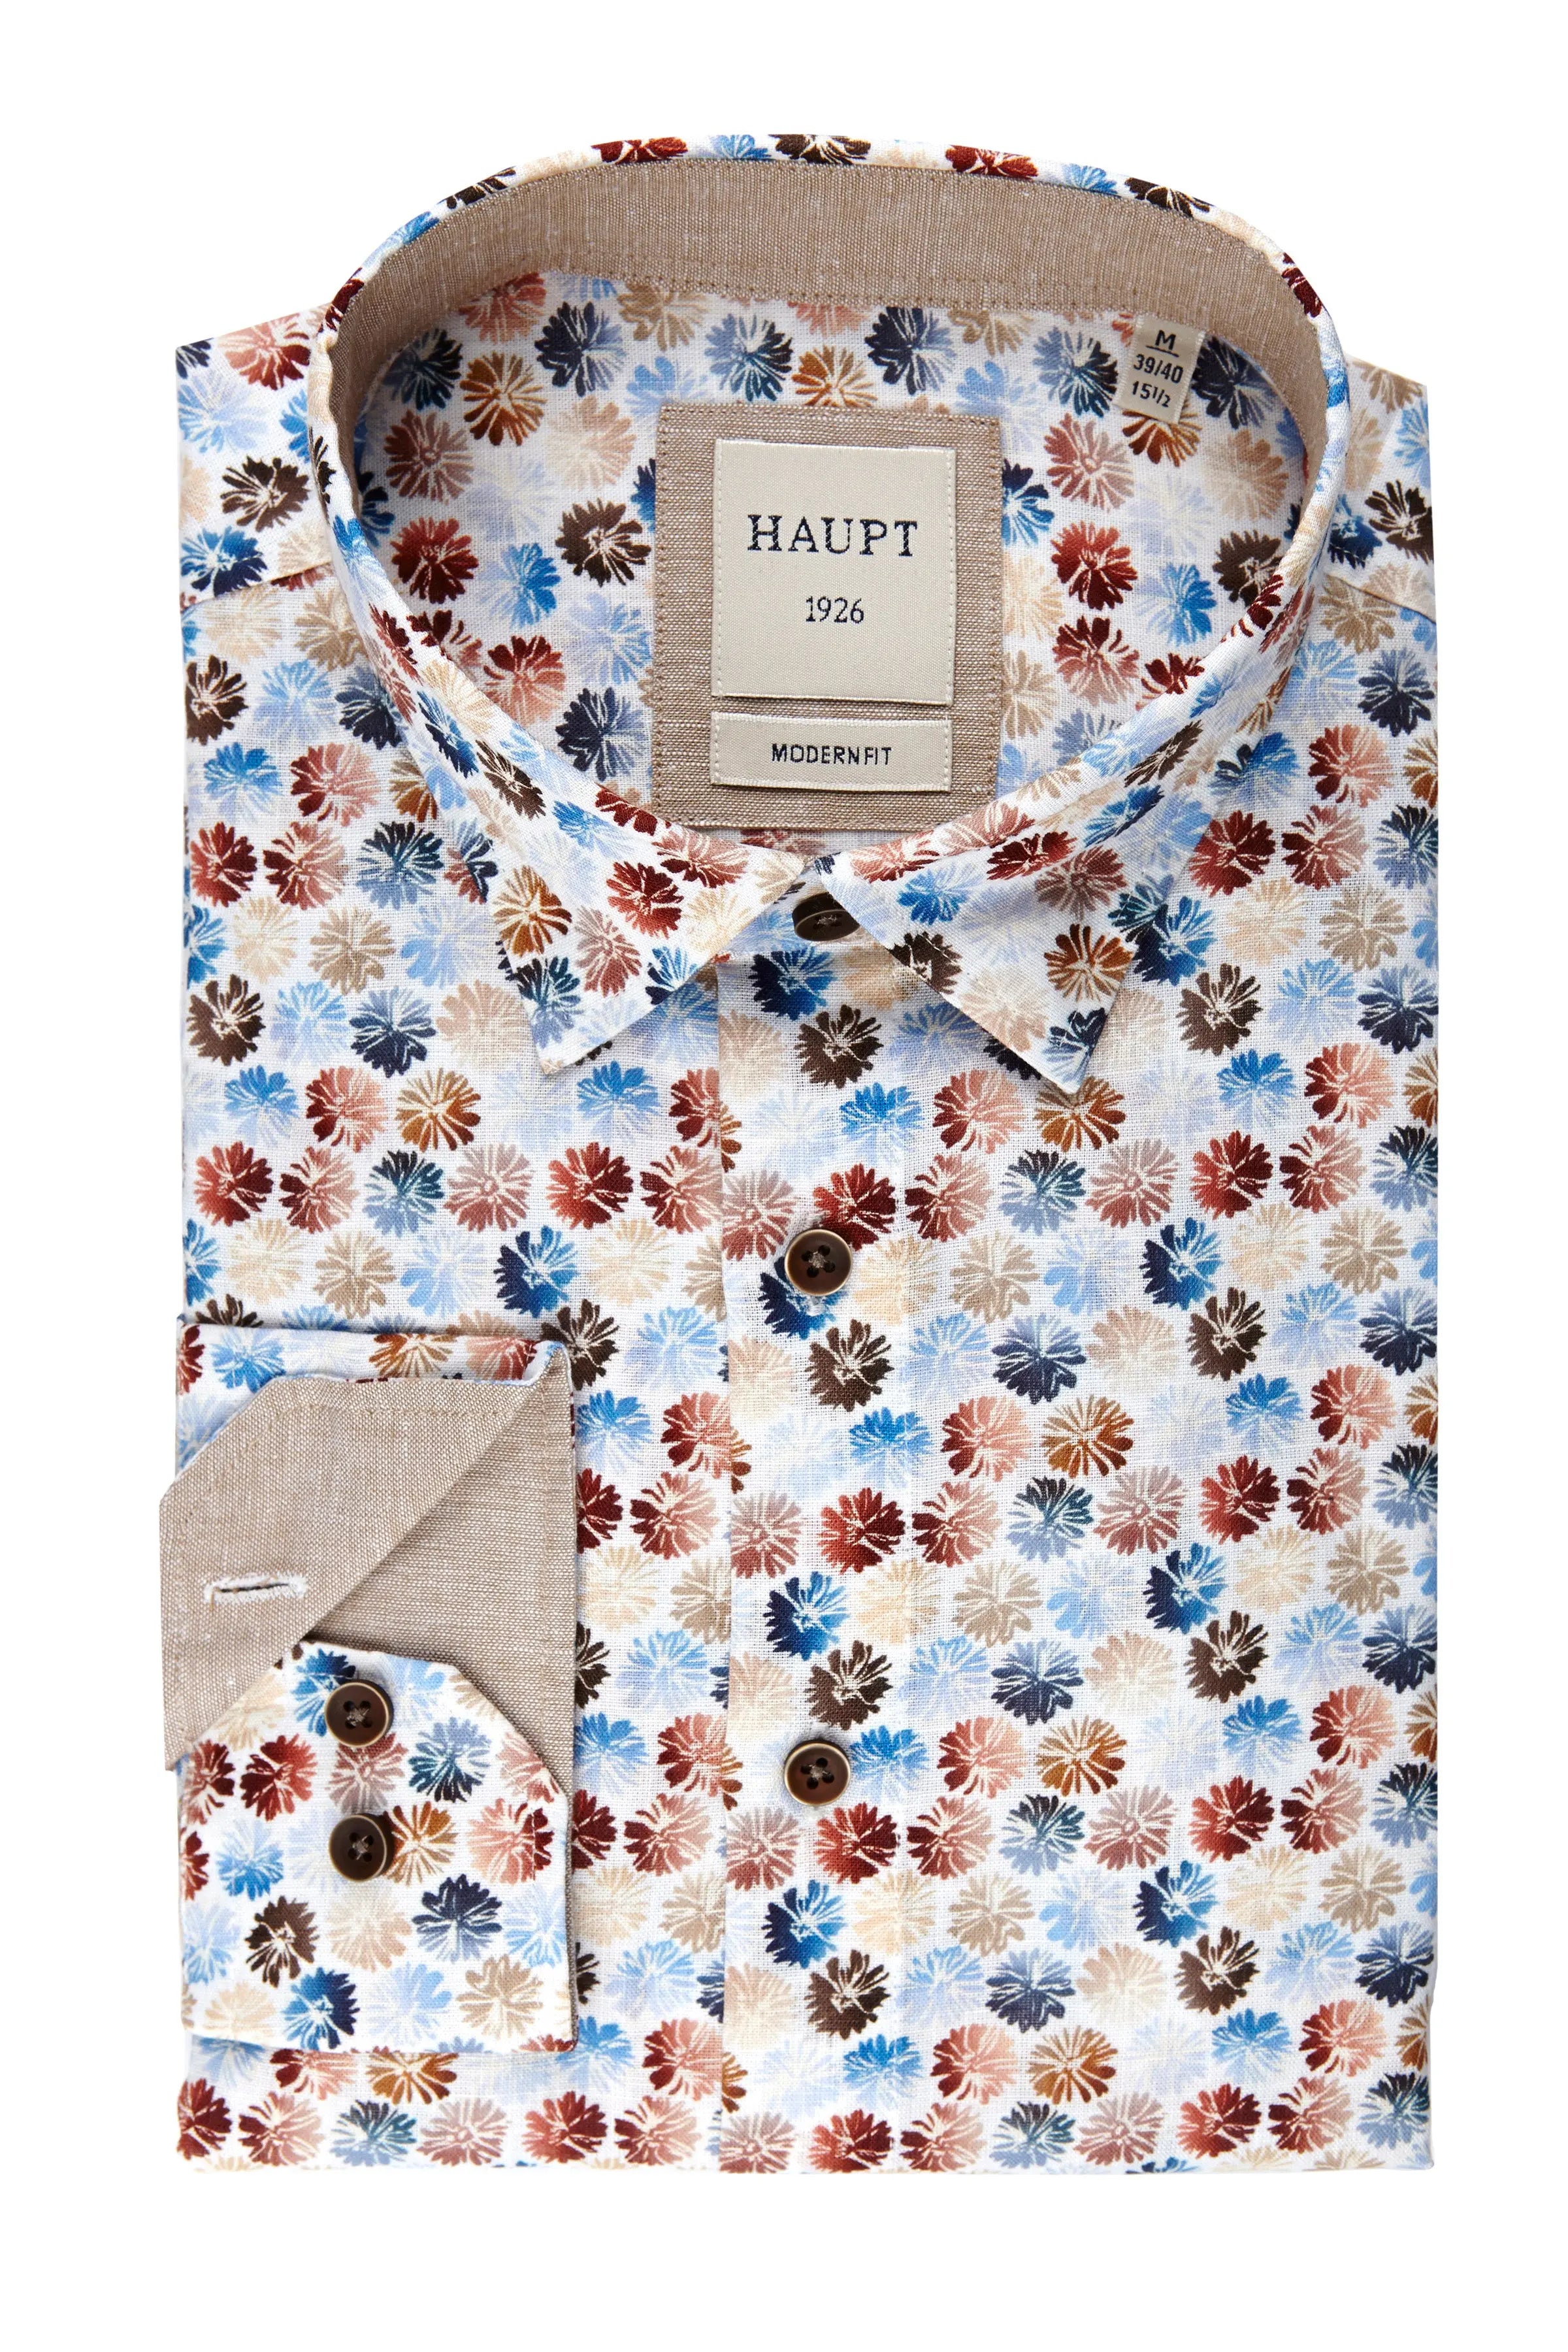 Baumwoll-Herrenhemd white print Haupt